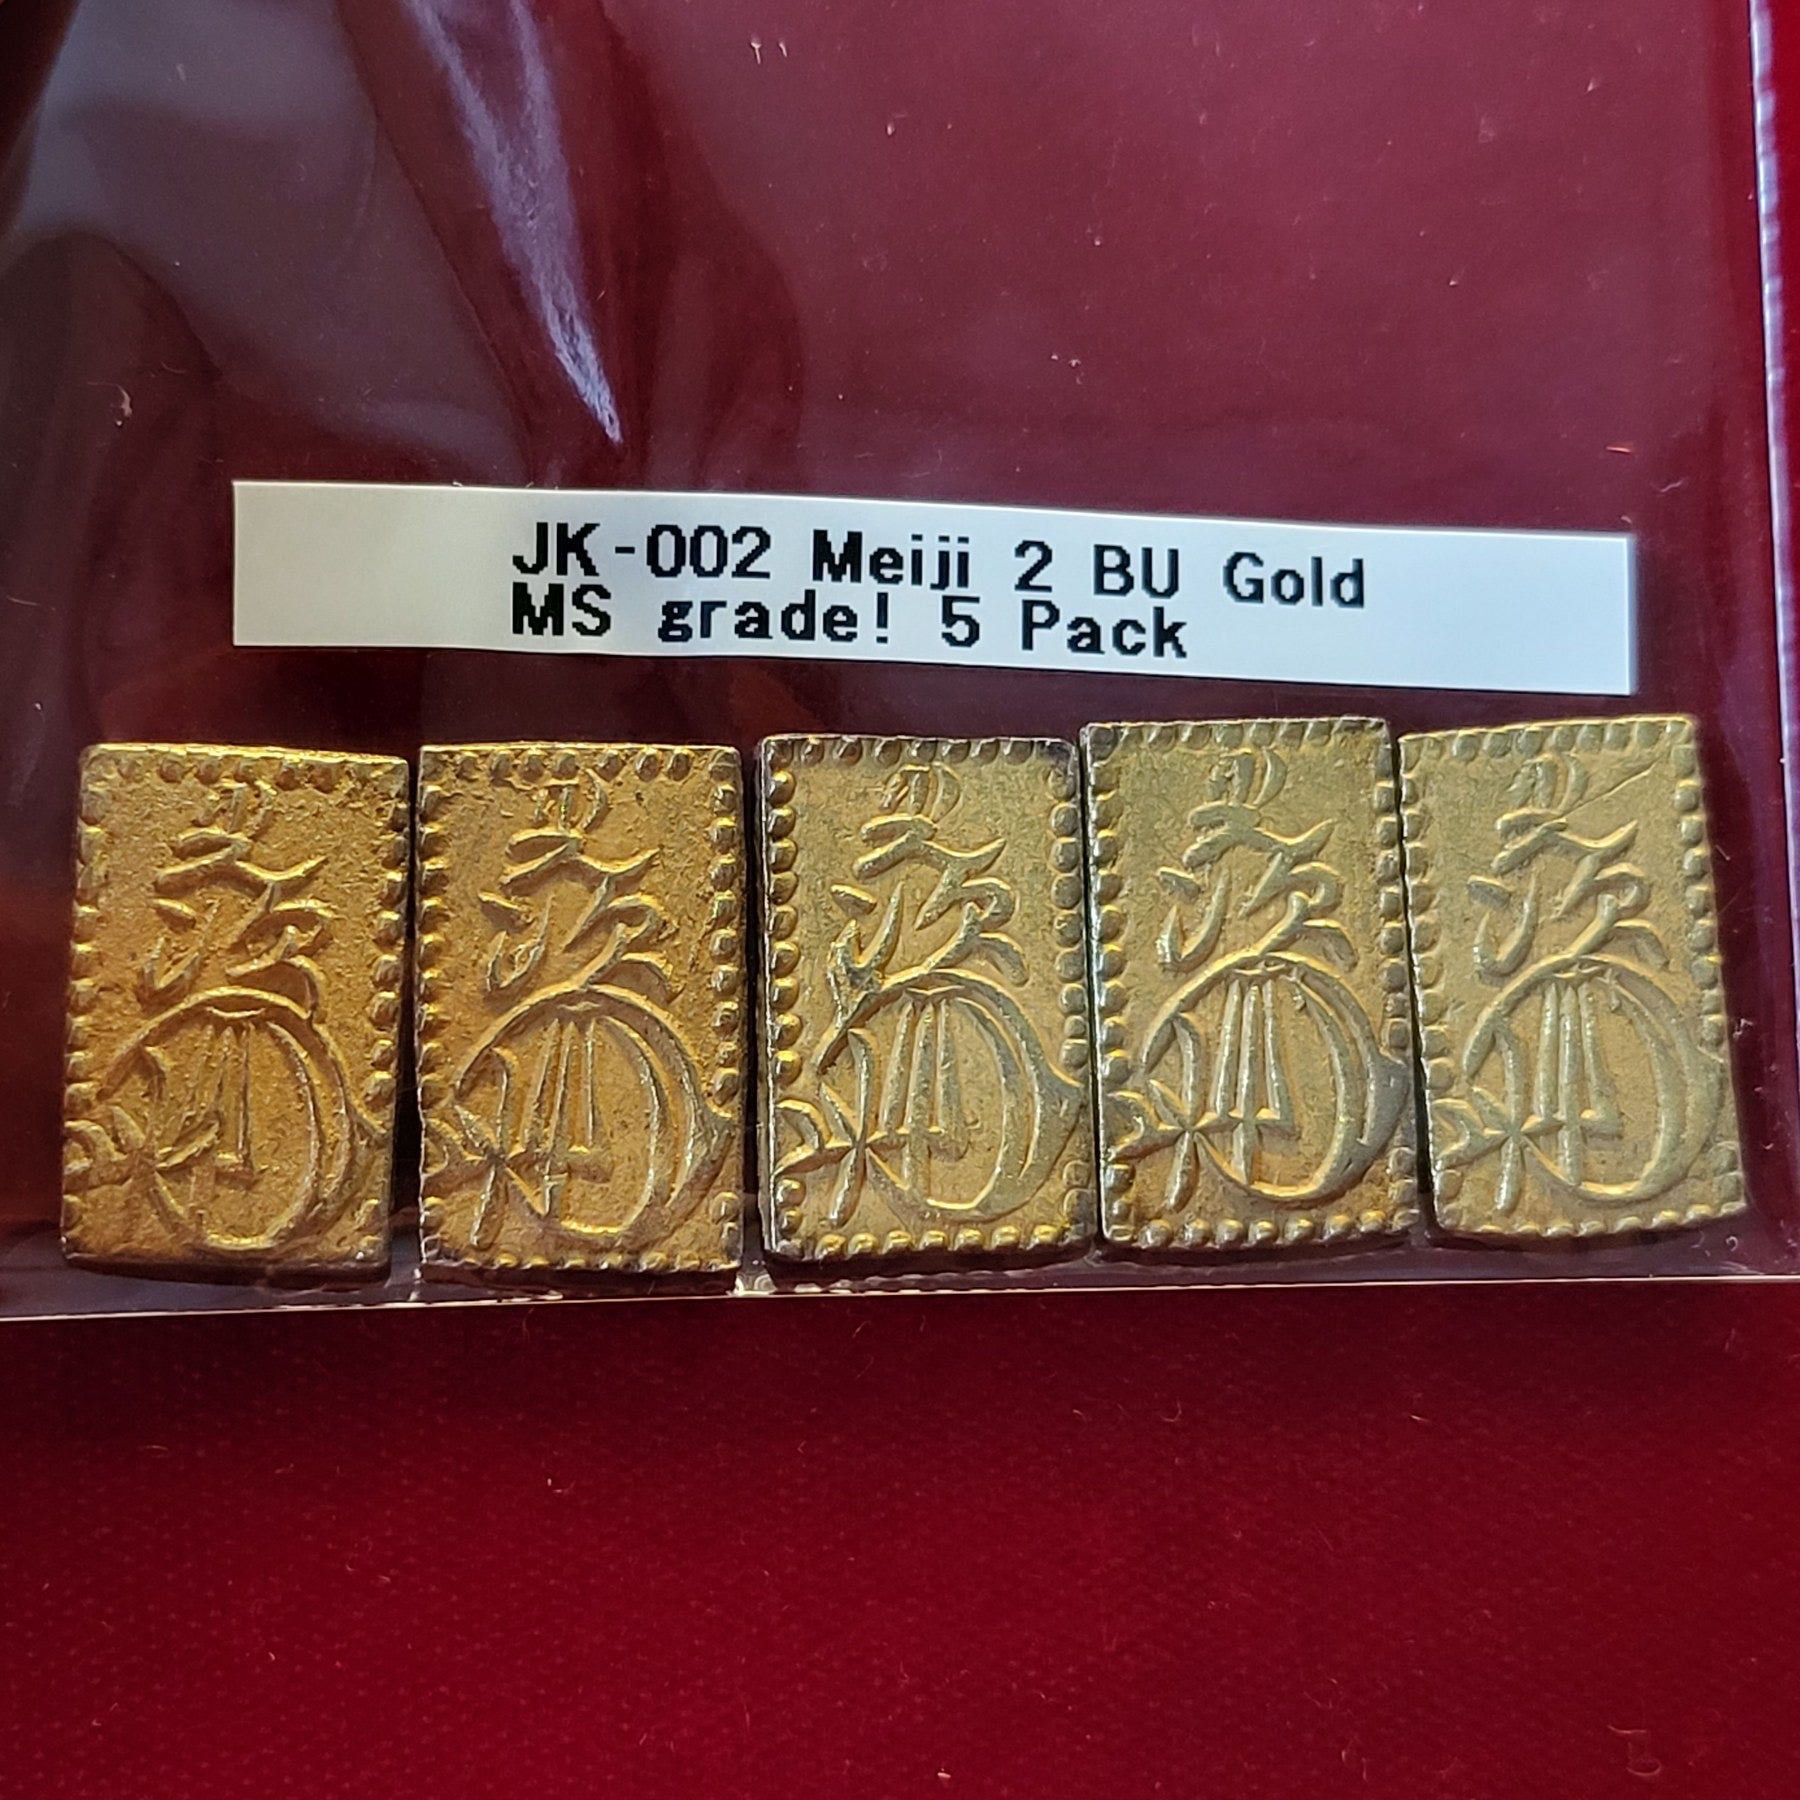 Meiji 2 Bu Gold MS grade! 5 Pack 